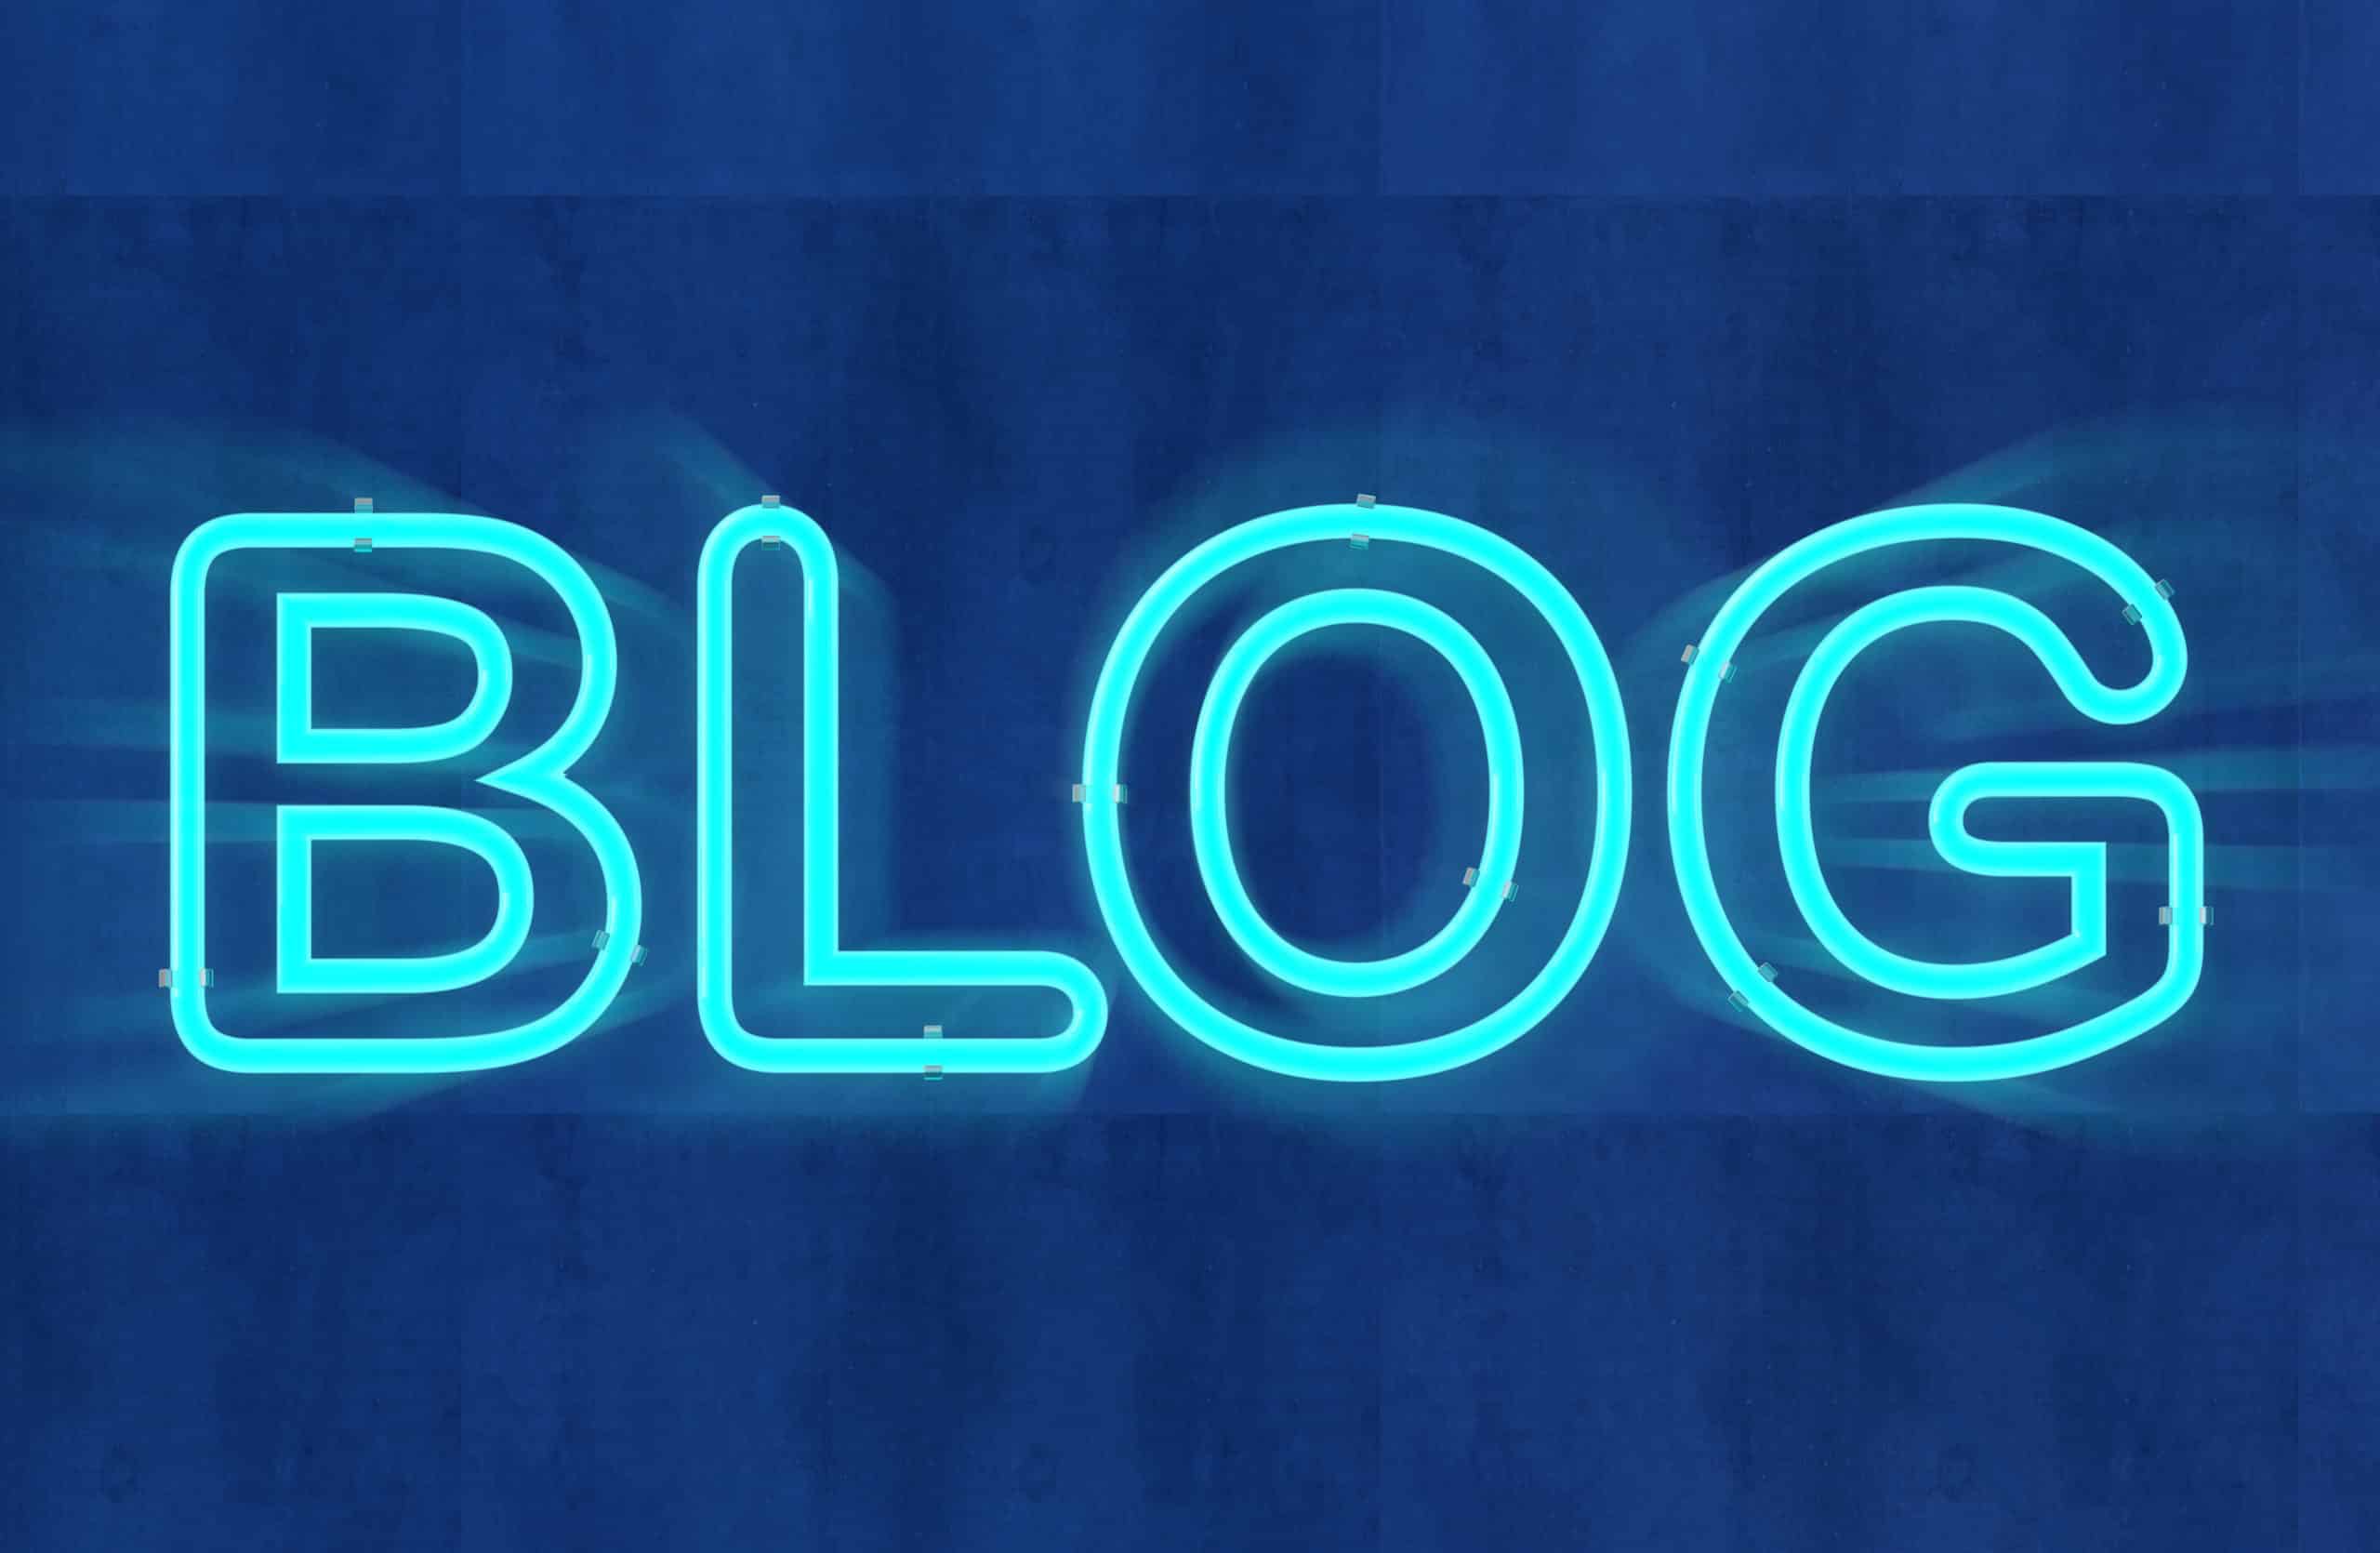 Blog Basics